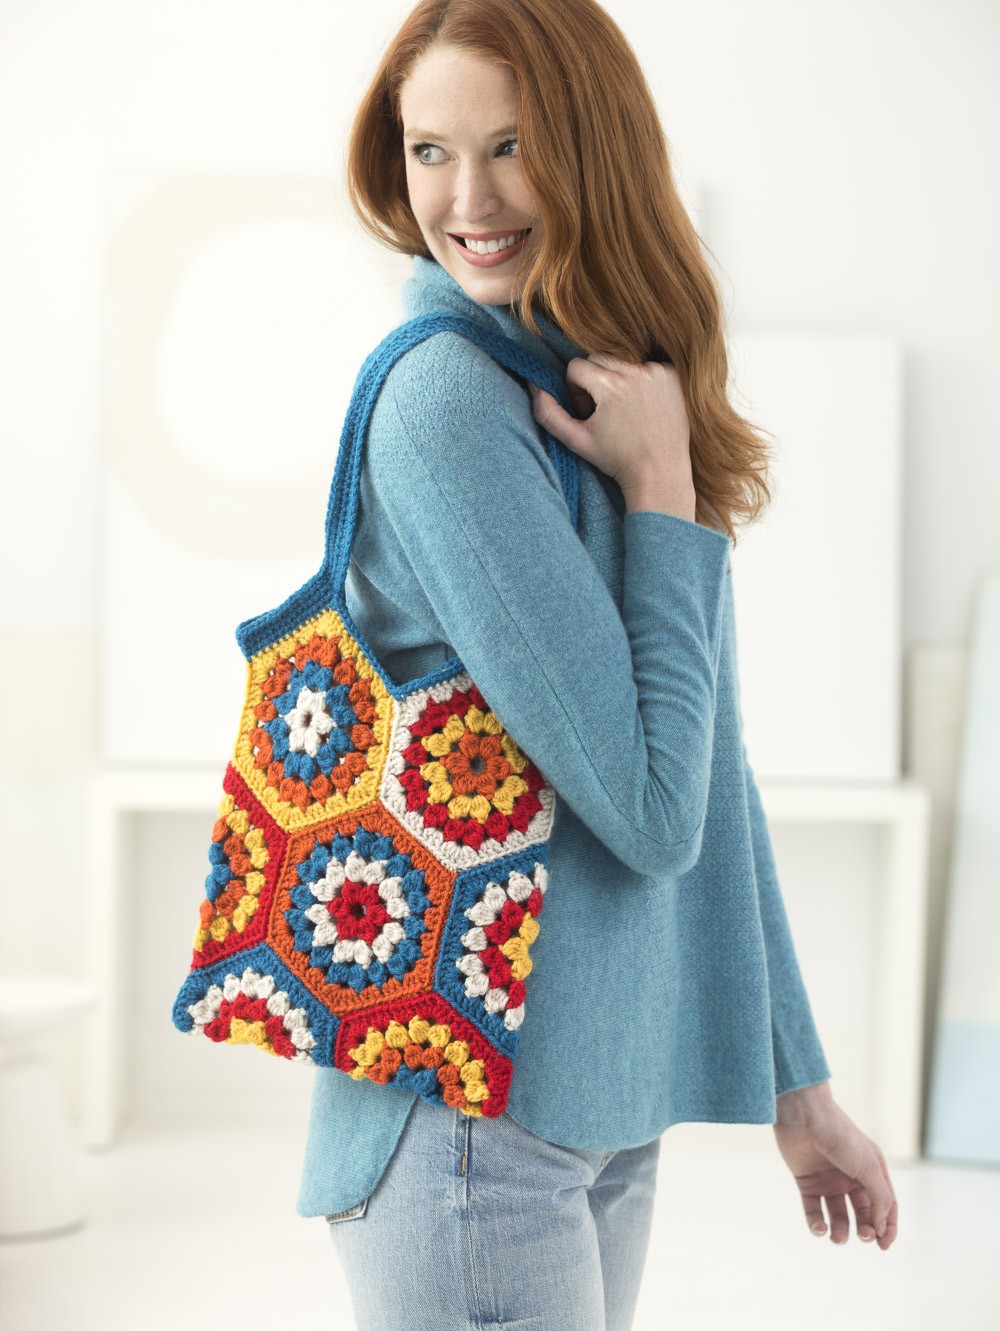 Granny Motif Market Bag Crochet